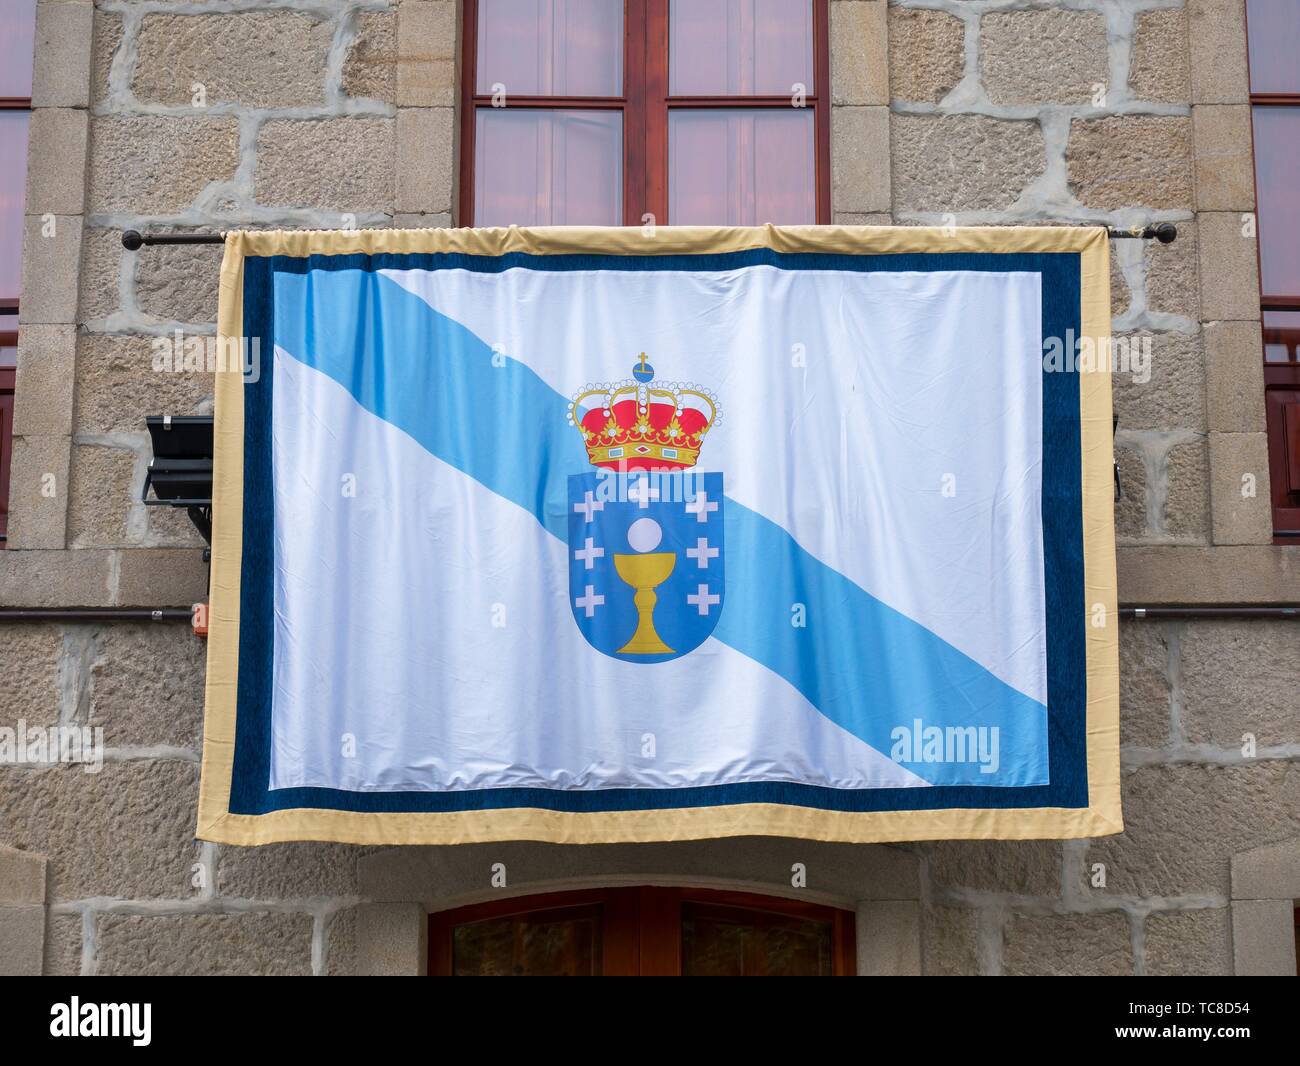 Bandera de Galicia. España Stock Photo - Alamy